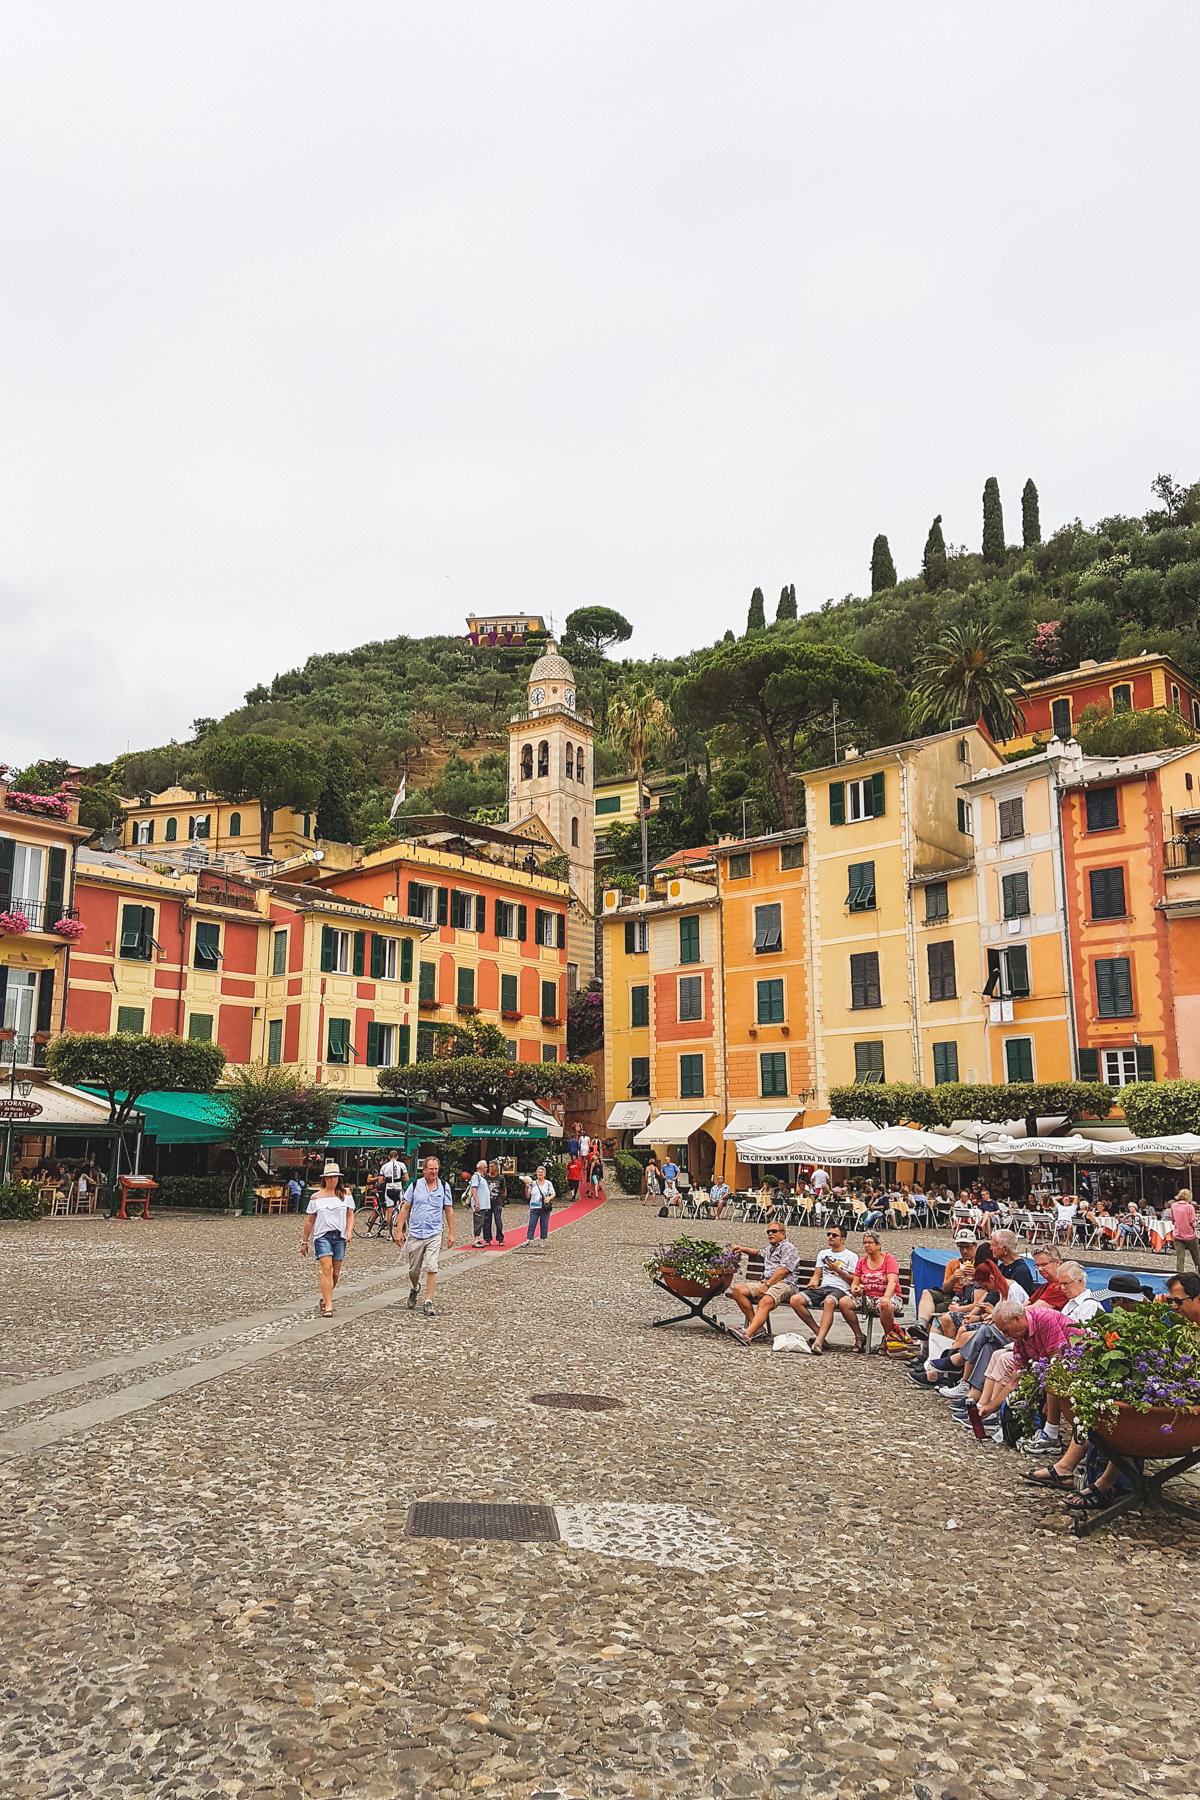 The Main Square in Portofino, Liguria, Italy.